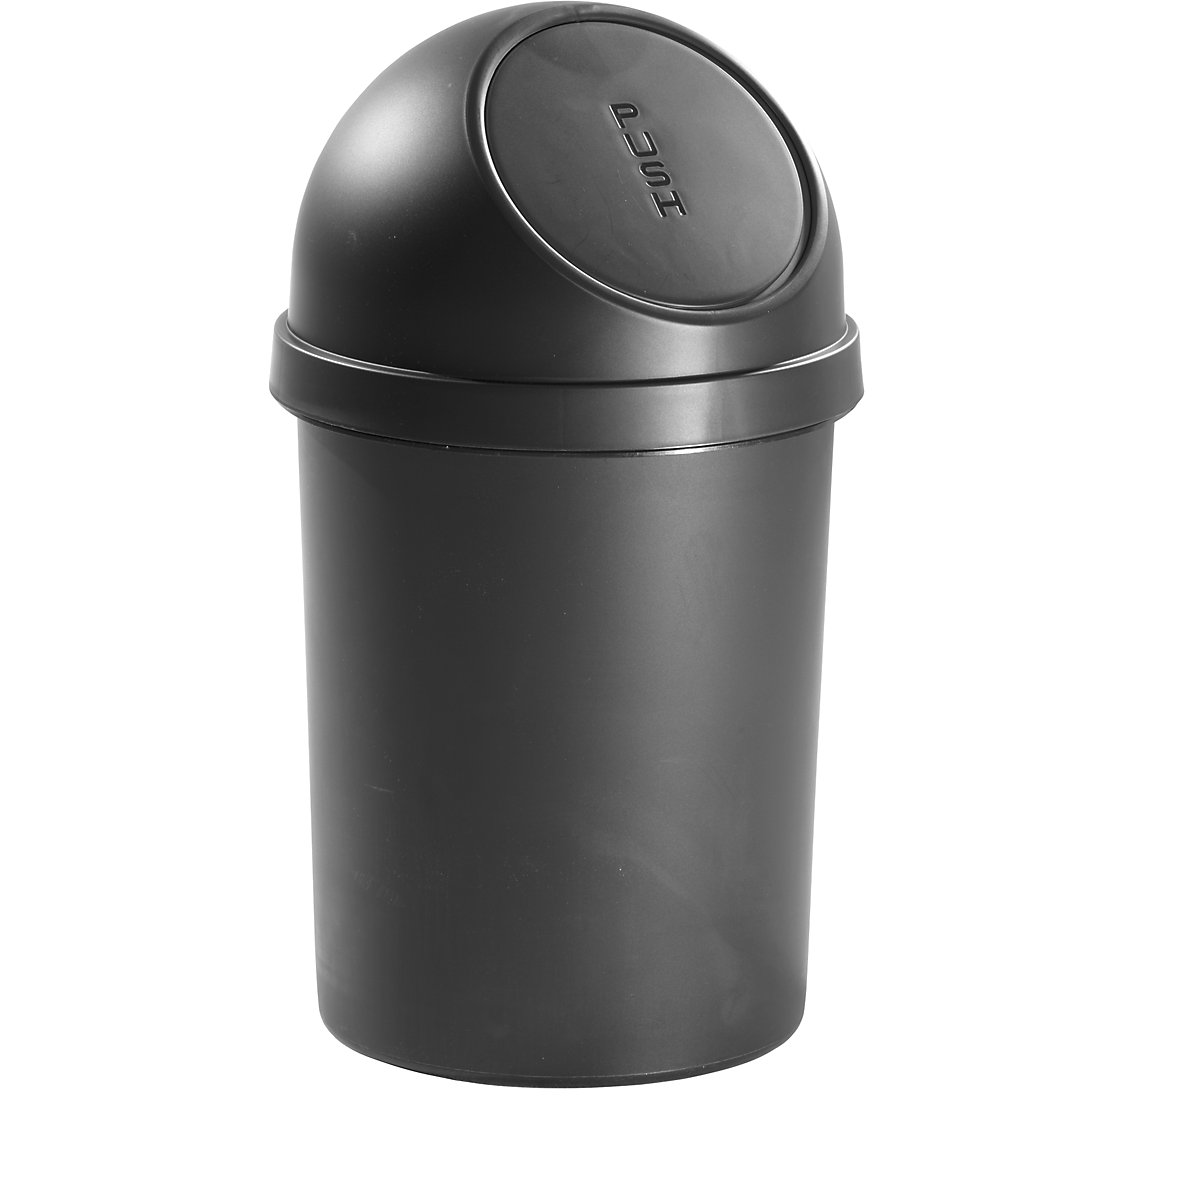 helit – Samozavírací nádoba na odpadky z plastu, objem 45 l, v x Ø 700 x 400 mm, černá, bal.j. 2 ks